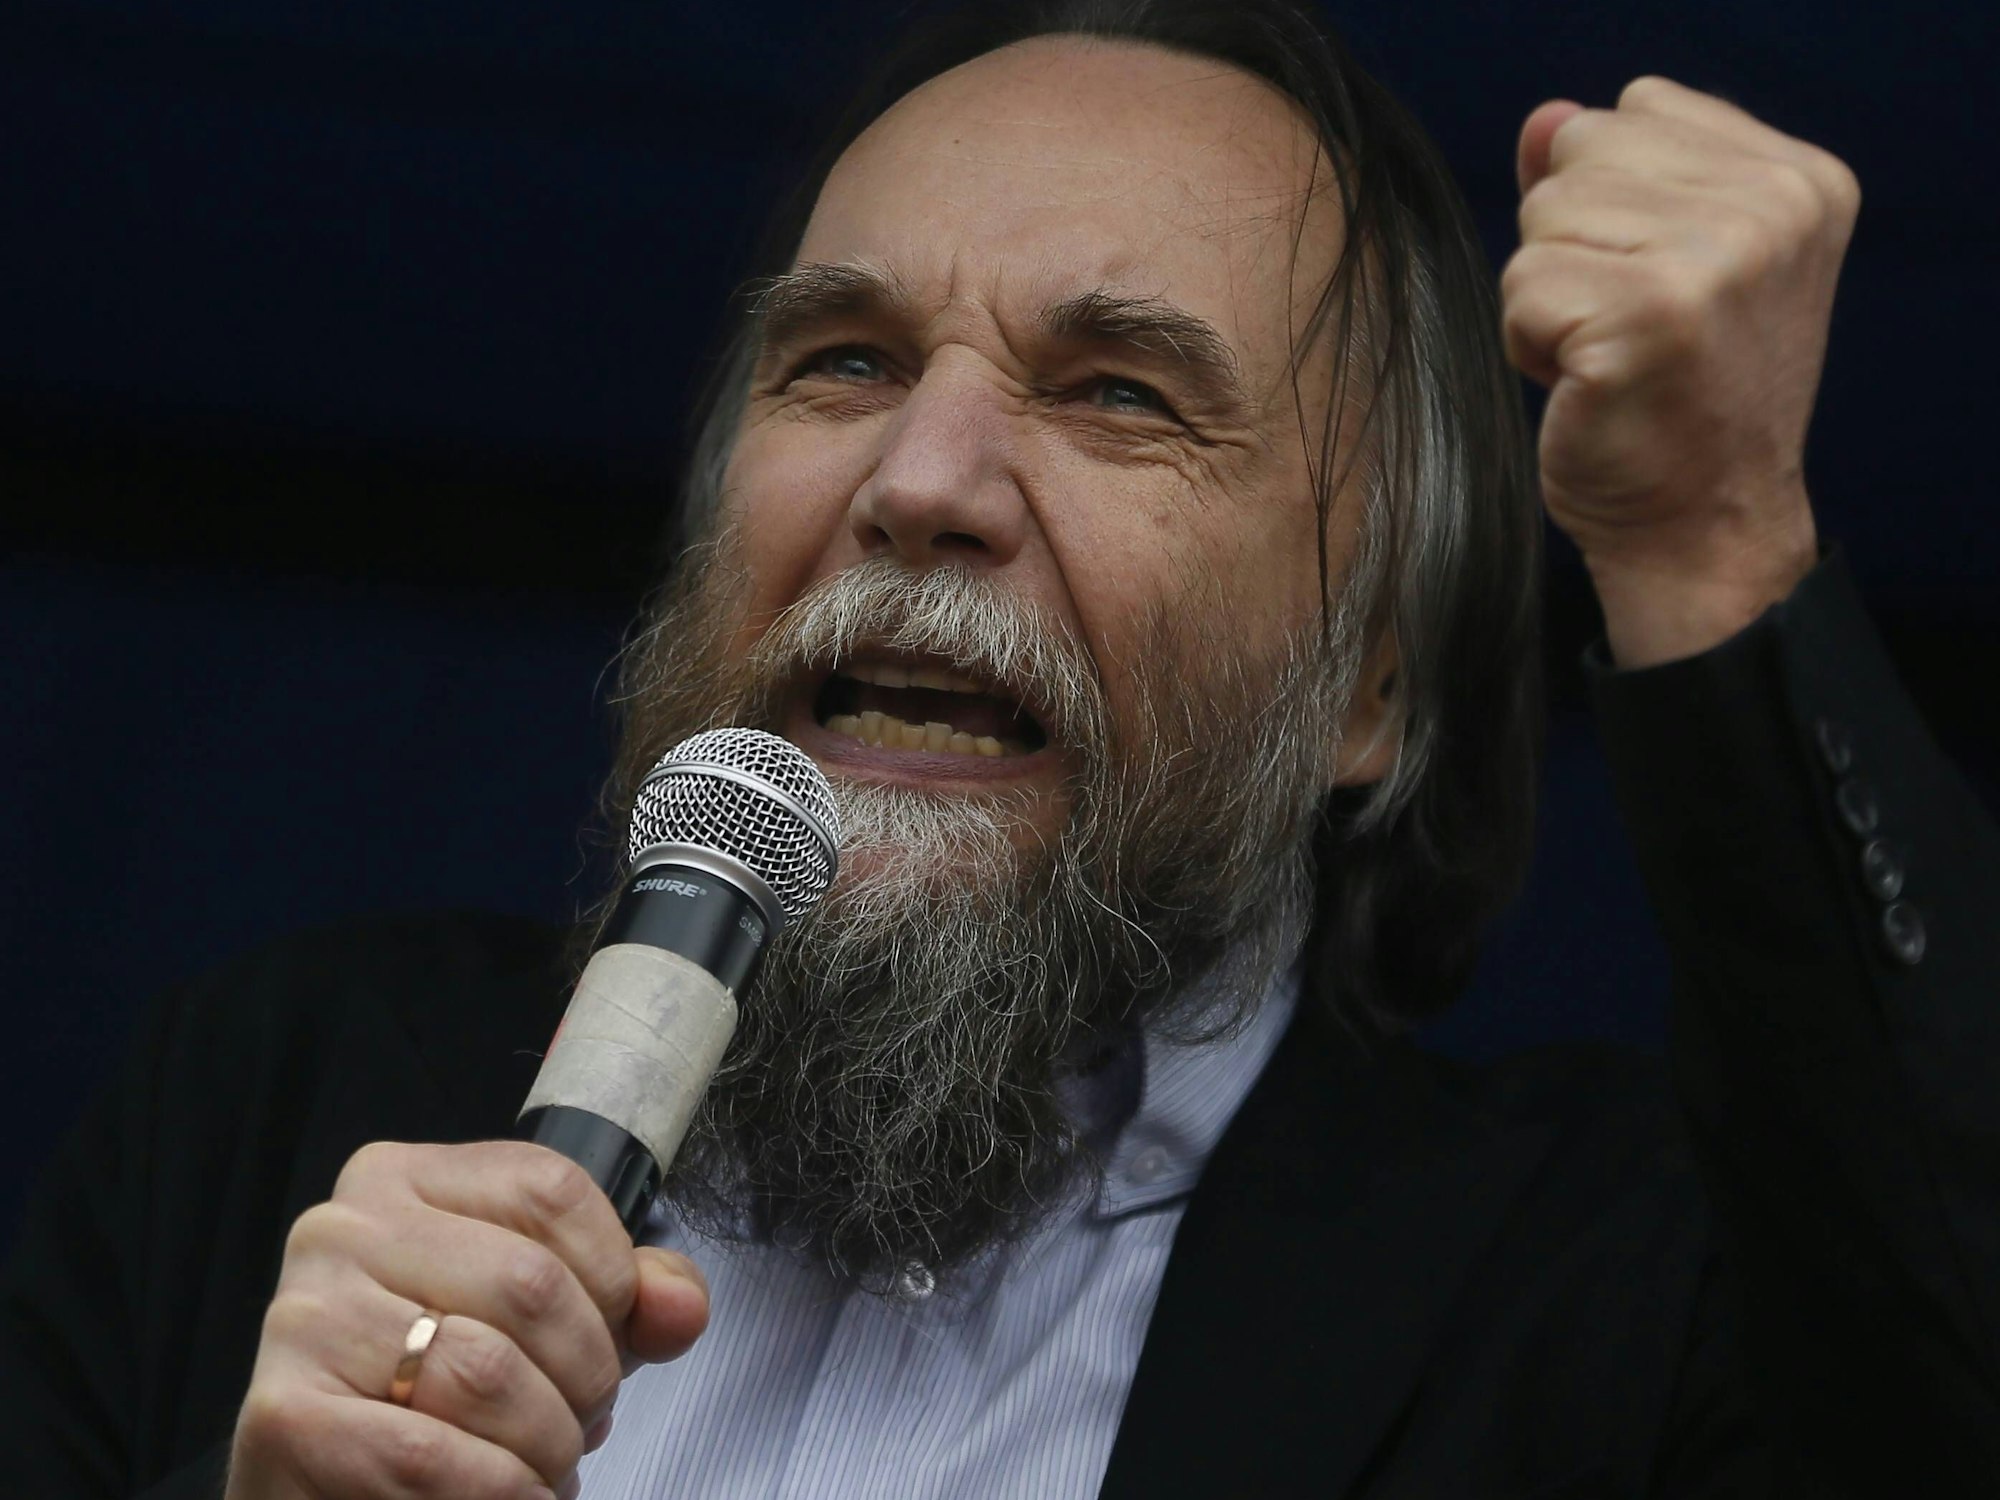 Der rechtsextreme Alexander Dugin am Mikrofon.